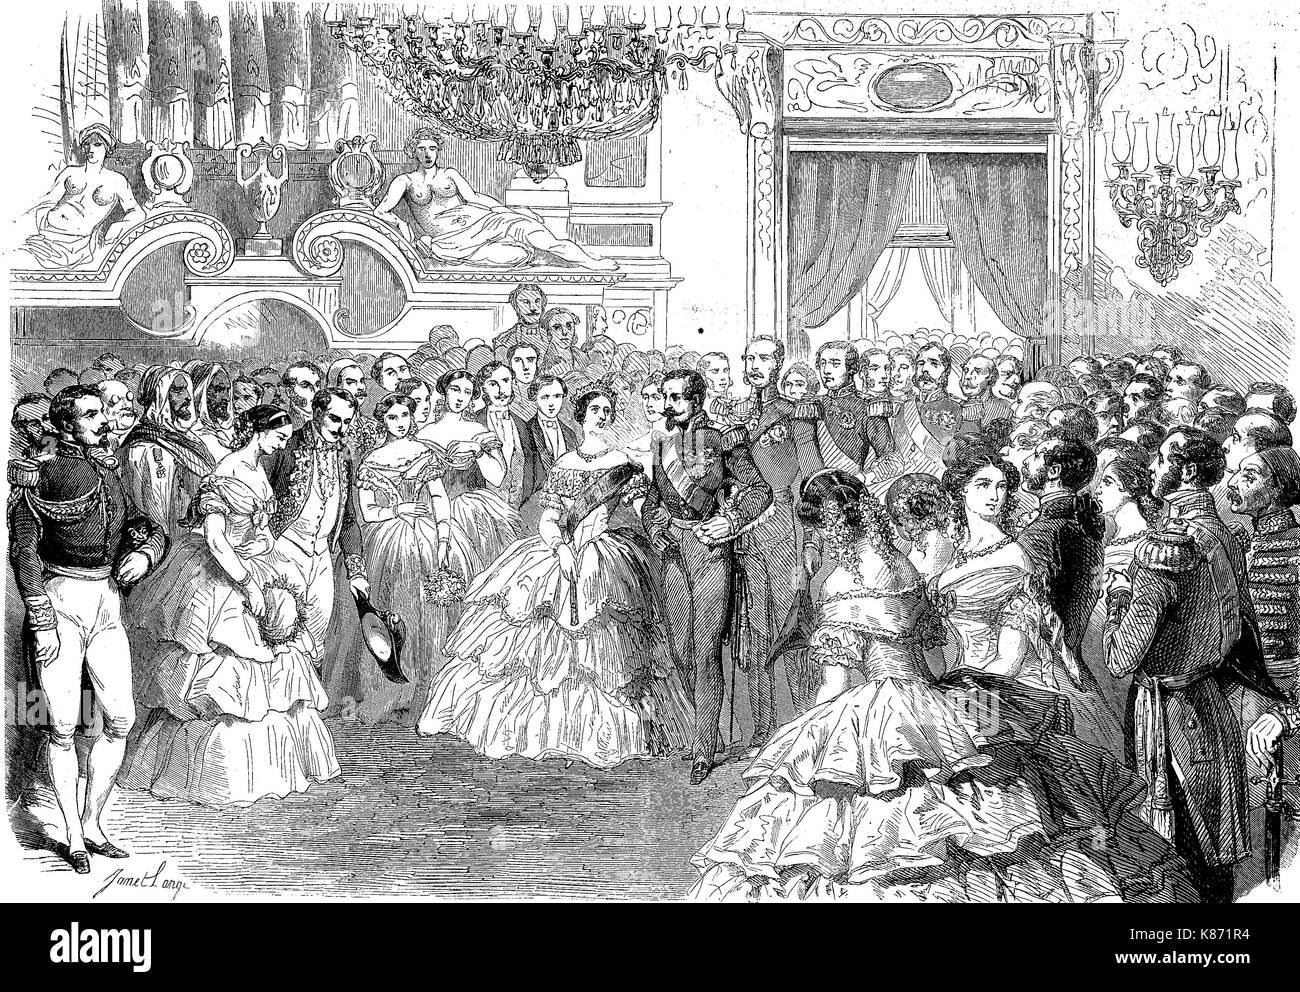 Un festival pour la reine Victoira de l'Angleterre, 1819 - 1901, dans le palais de Londres, Grande-Bretagne, amélioration numérique woodprint reproduction d'un original du 19ème siècle Banque D'Images